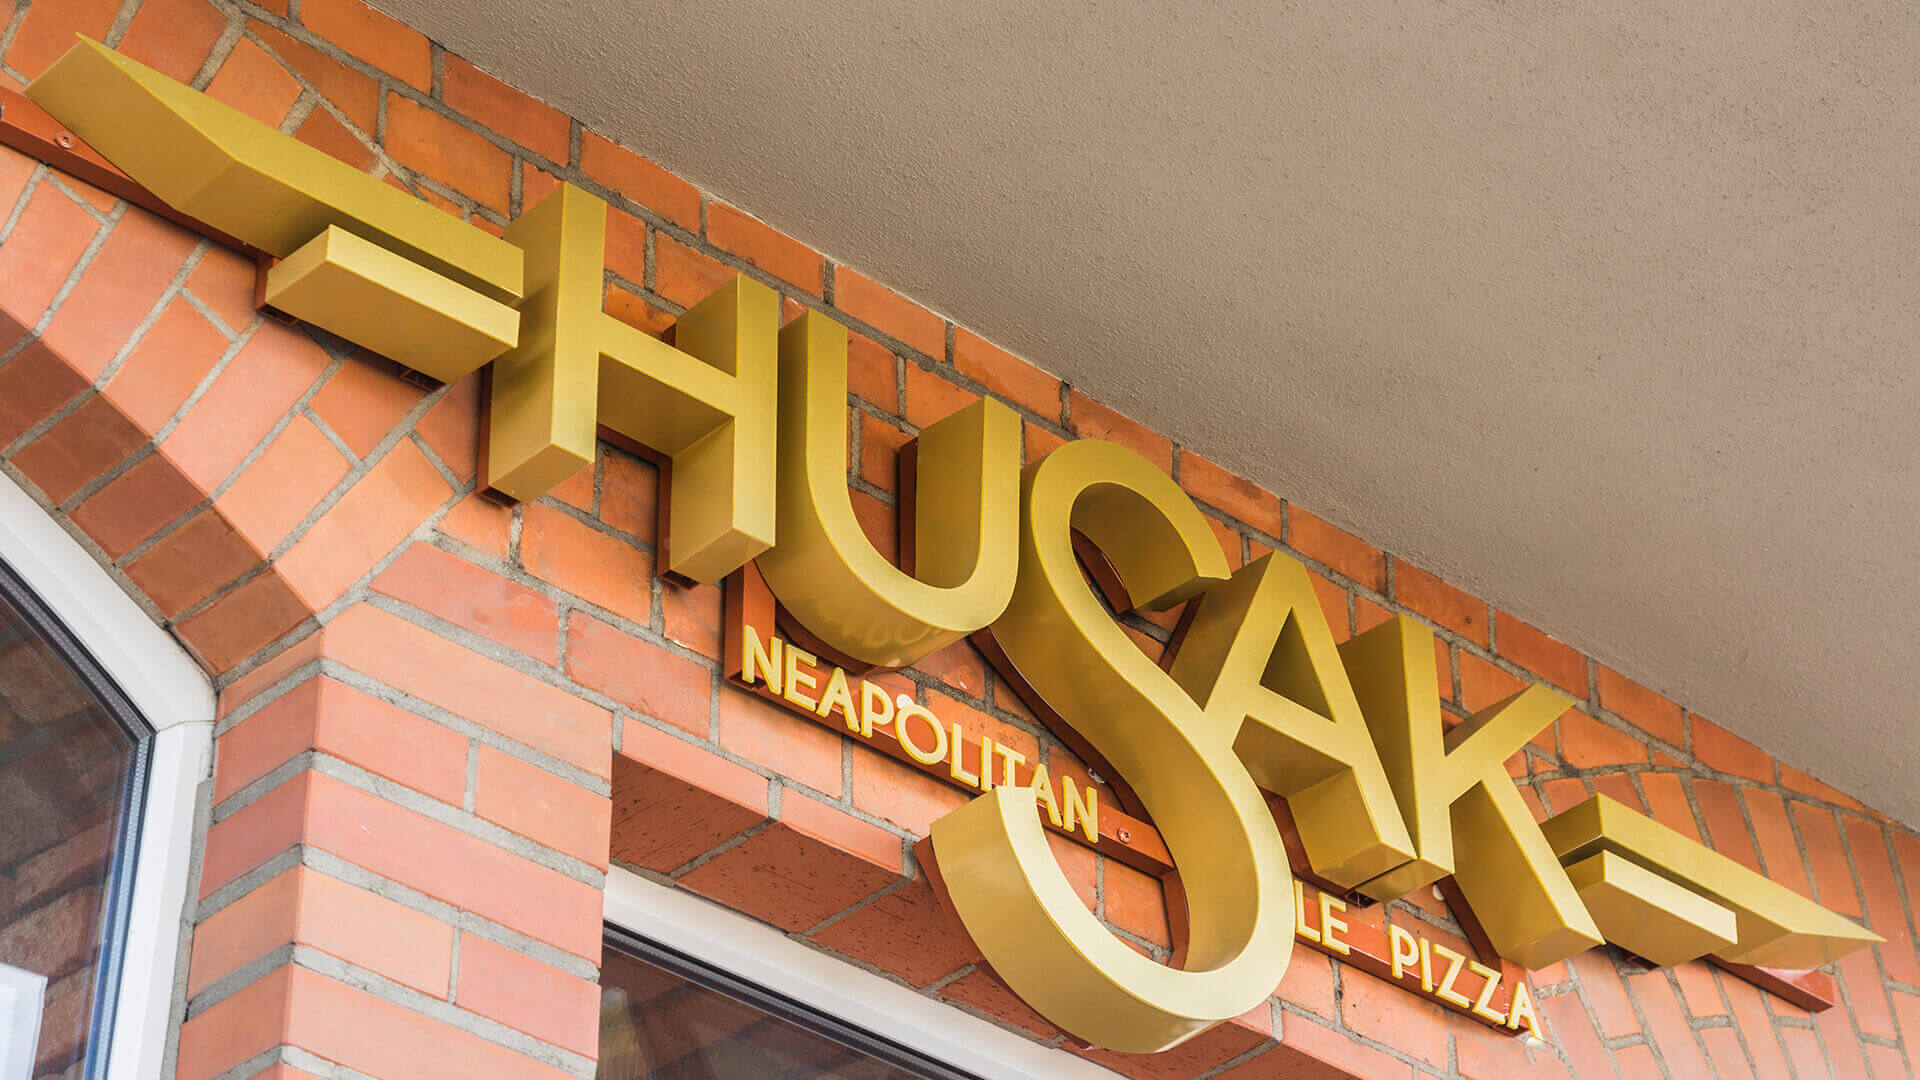 pizzeria husak - husak-pizzeria-zlote-lettere-spaziali-illuminato-piastrelle-lettere-sul-muro-con-cegel-sopra l'ingresso-sopra la superficie-segno-montato-alla-muro-grunwaldzka-gdansk (14)